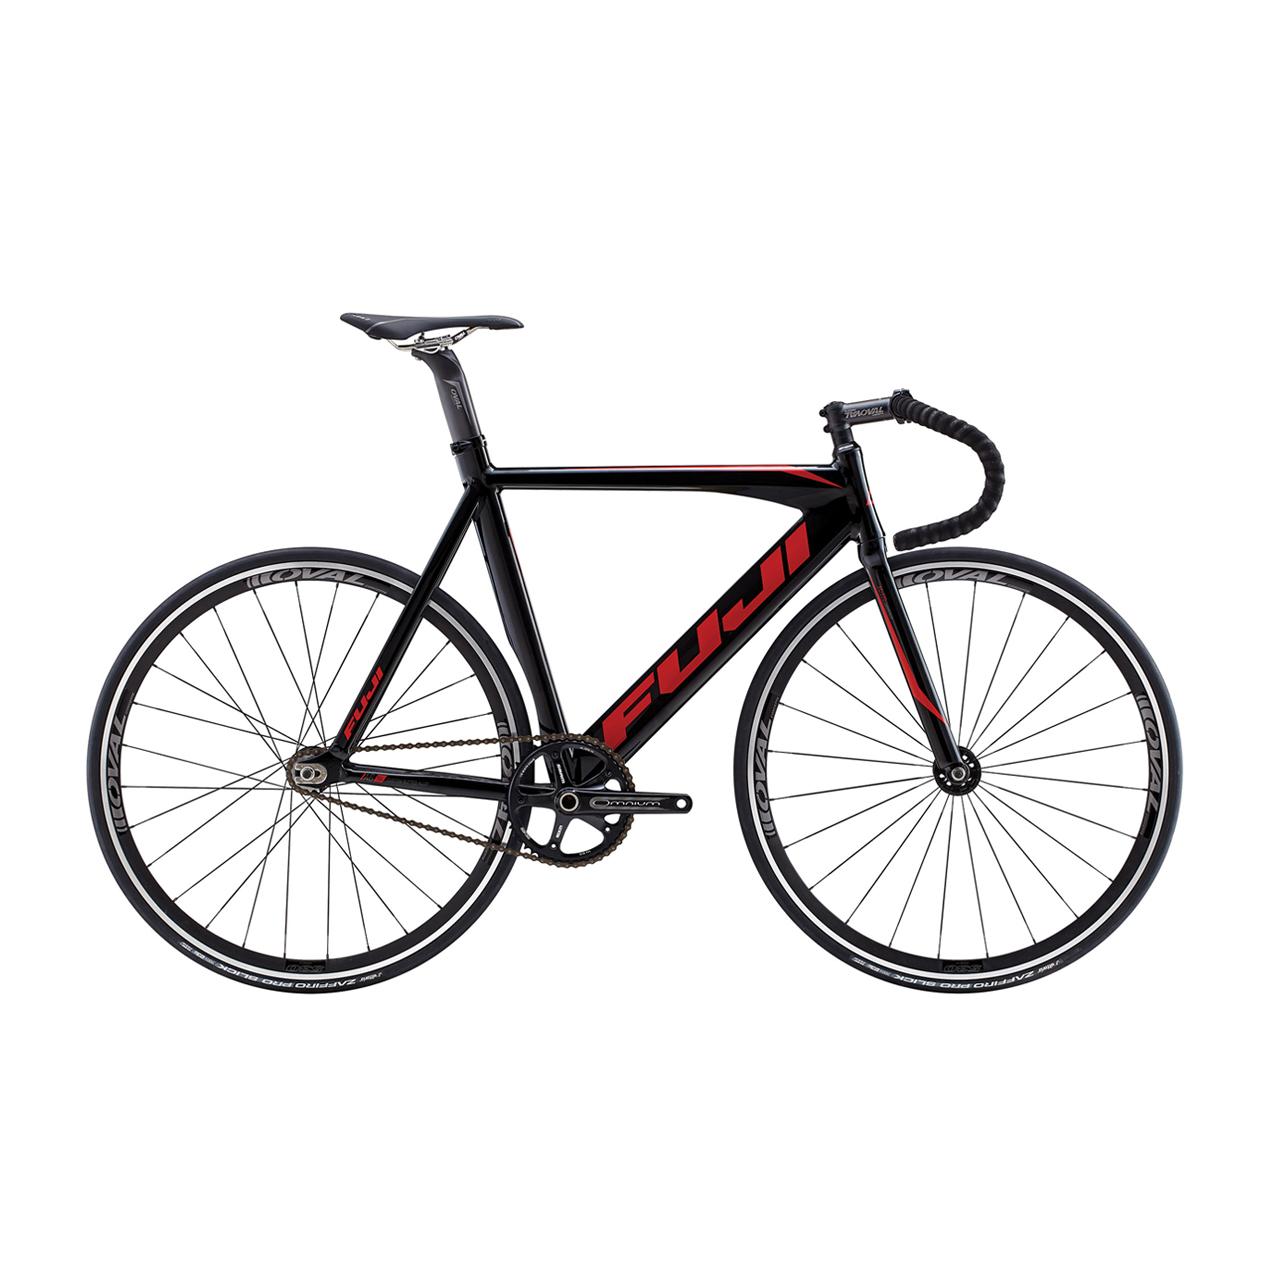 دوچرخه پیست فوجی Track Pro INTL سایز 28 رنگ ذغالی 2015